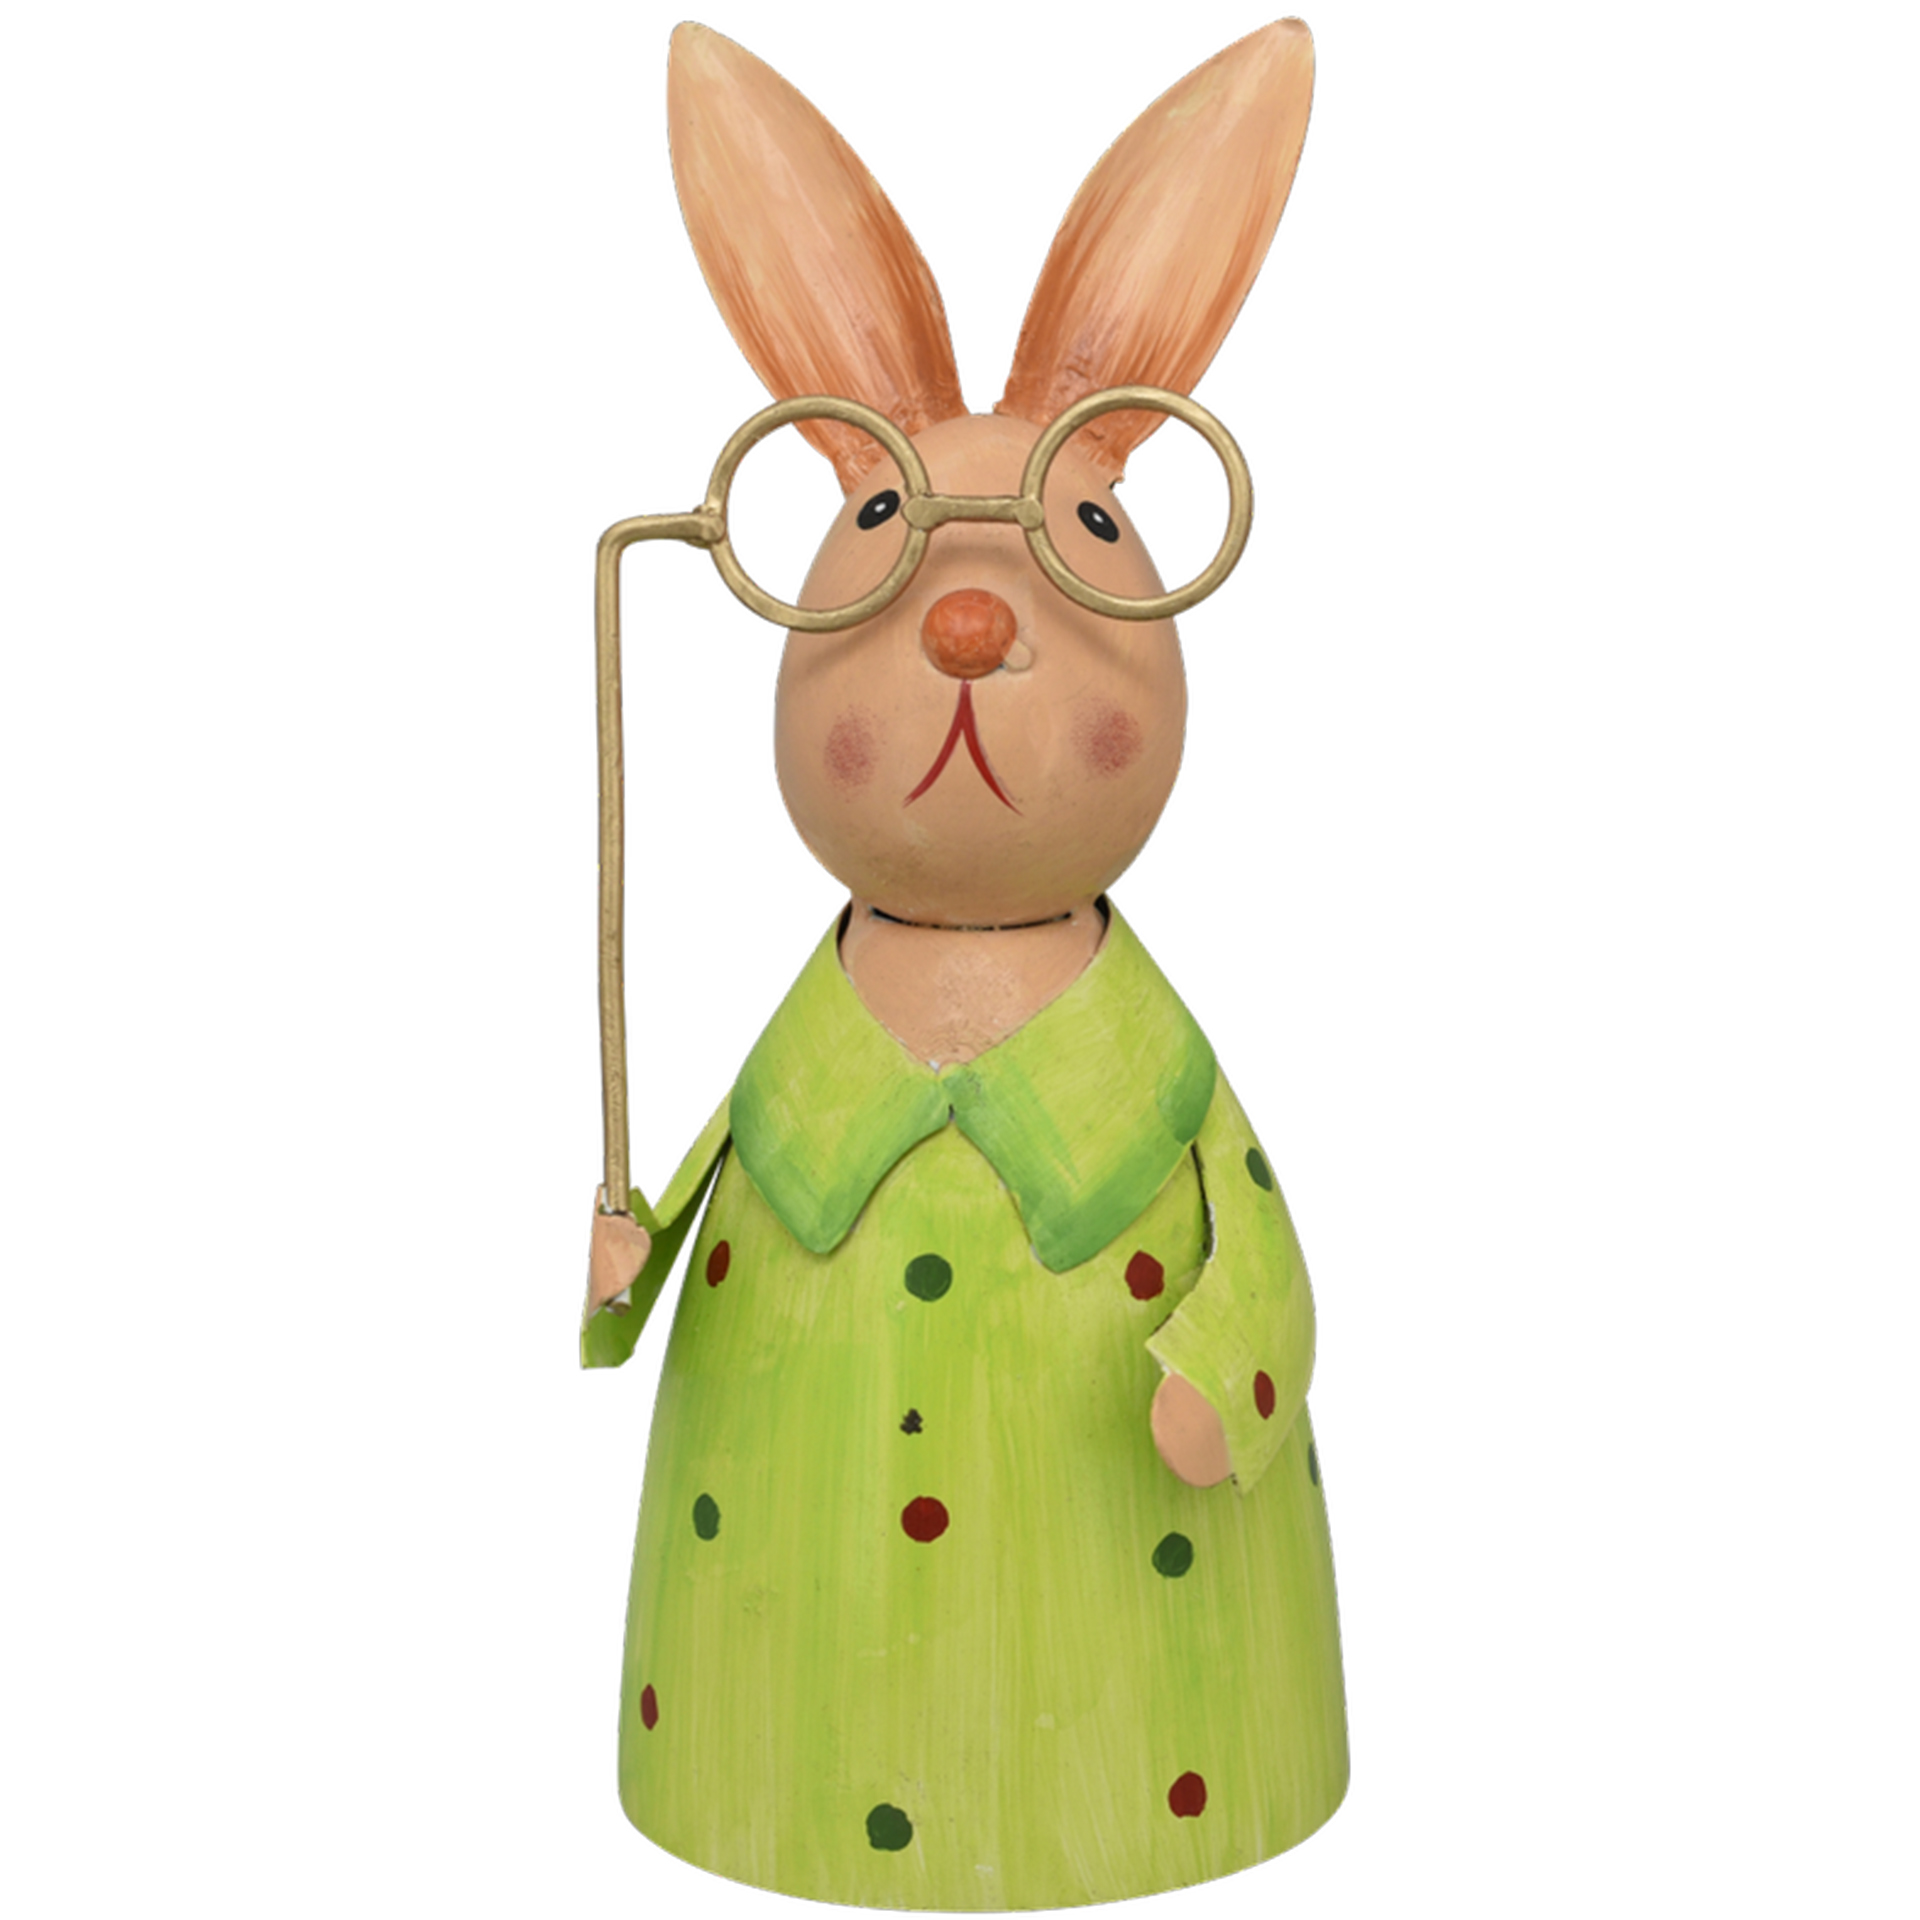 Zaunhocker Hase grün mit Brille Pfostenhocker  Staketenzaun Gartenzaun Gartendeko